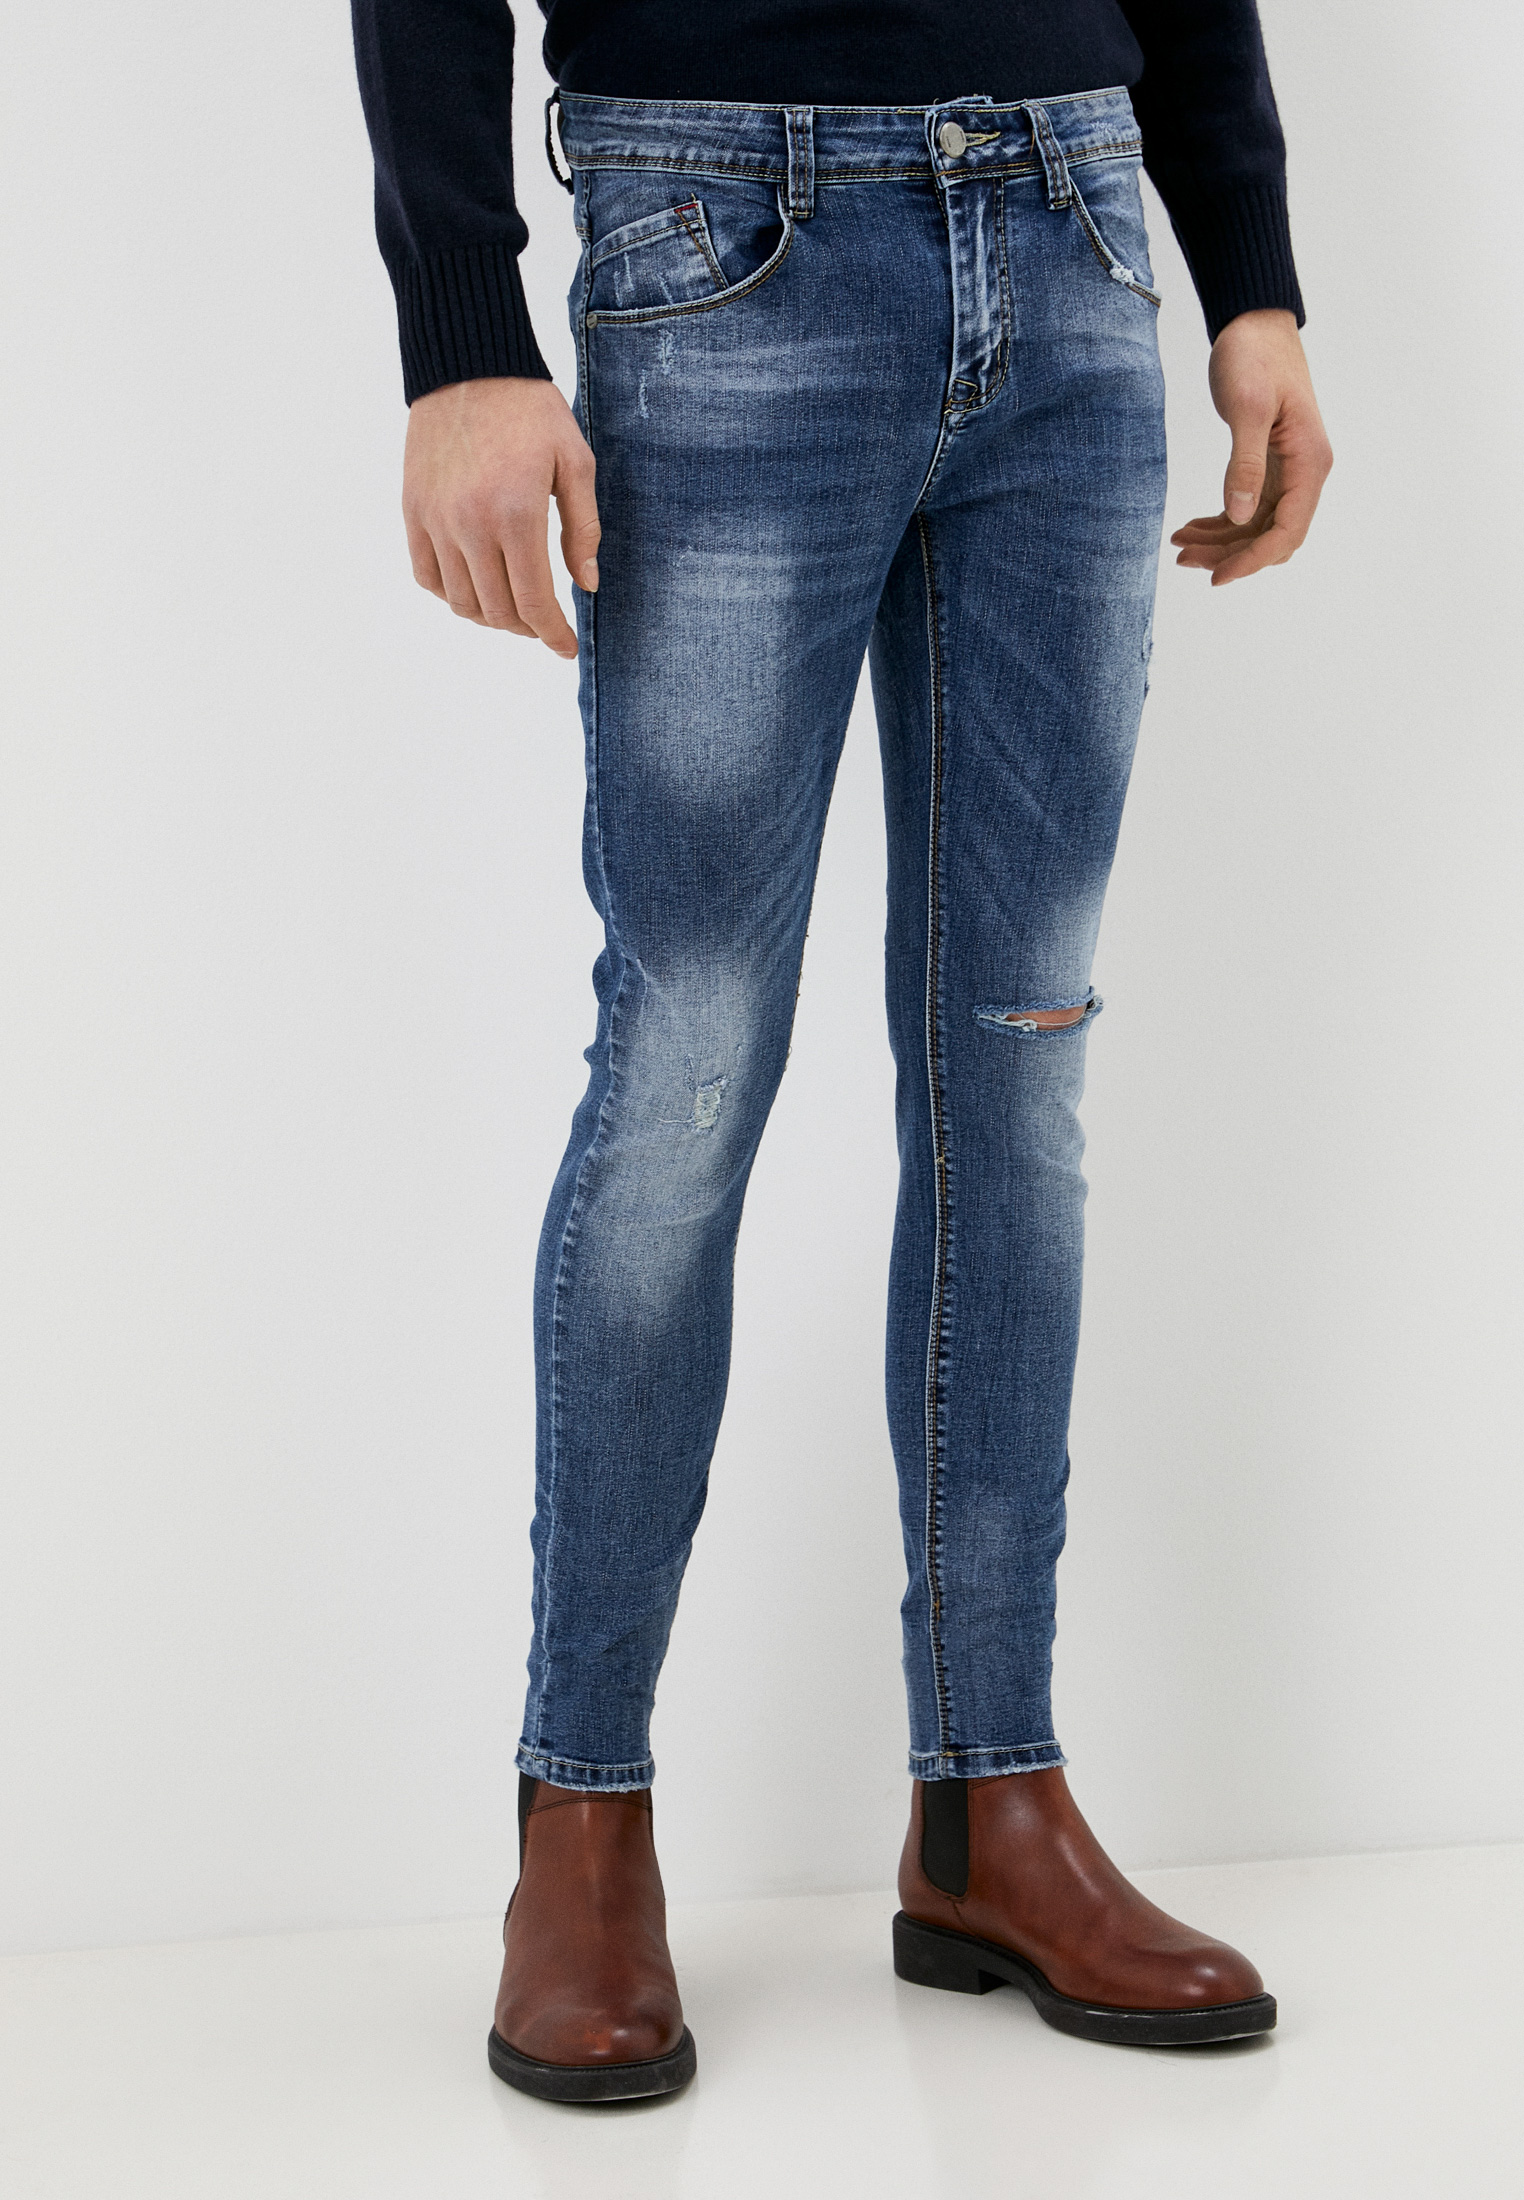 Зауженные джинсы мужские Tmk Jeans NC5609 купить за 3690 руб.